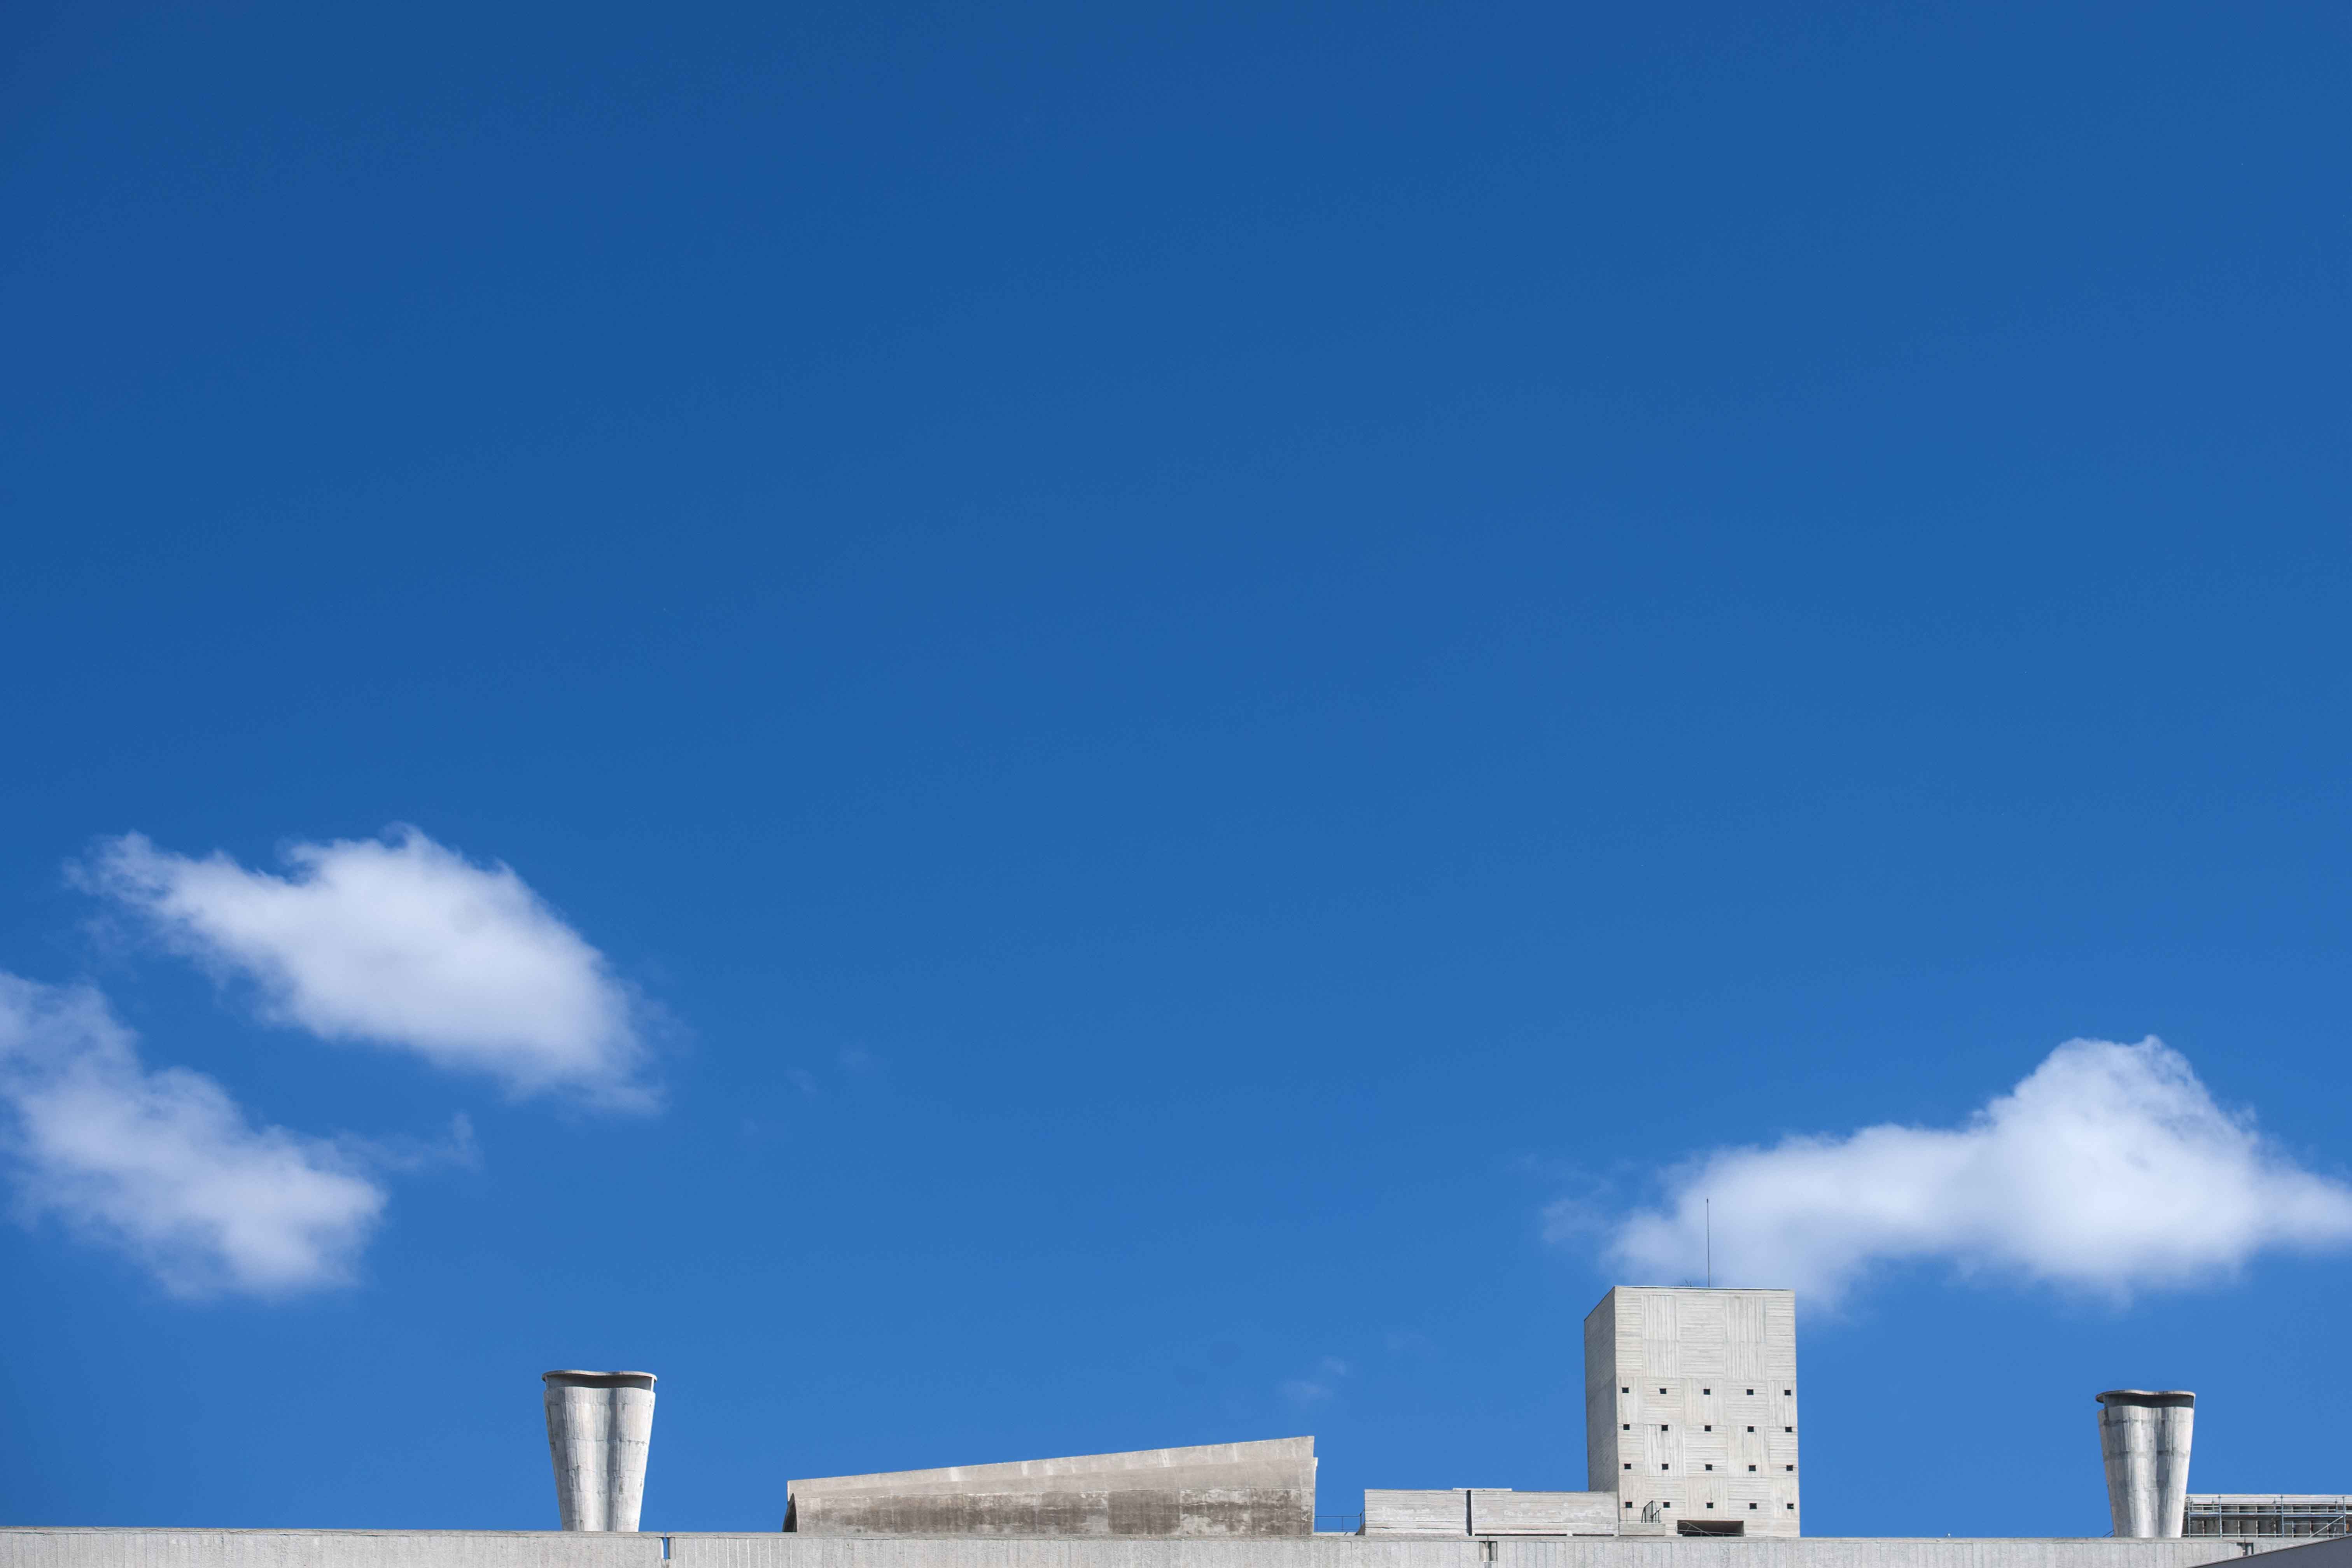 Le Corbusier la cite Radieuse beton toit terrasse cheminée gymnase histoire de l’art brutalisme concretesky line gris nuage poésie